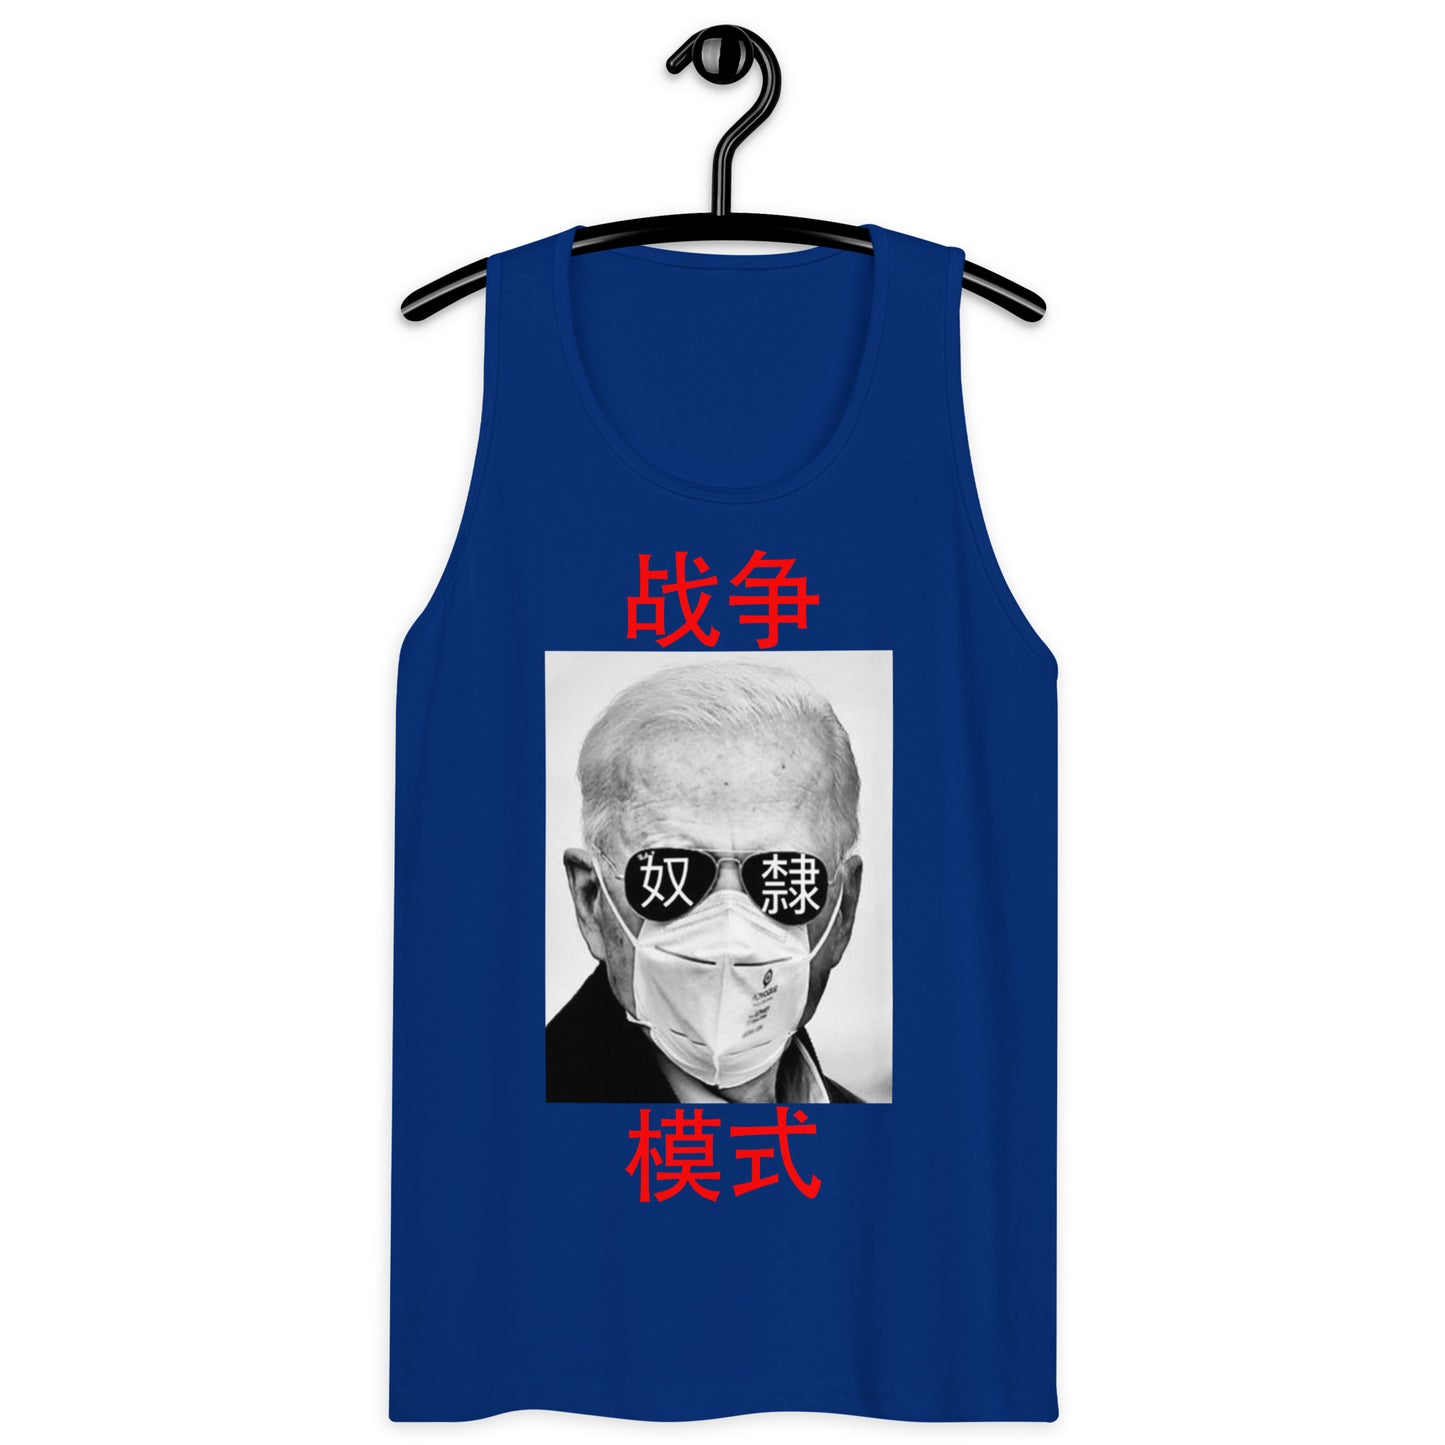 Beijing Biden Men’s Tank Top